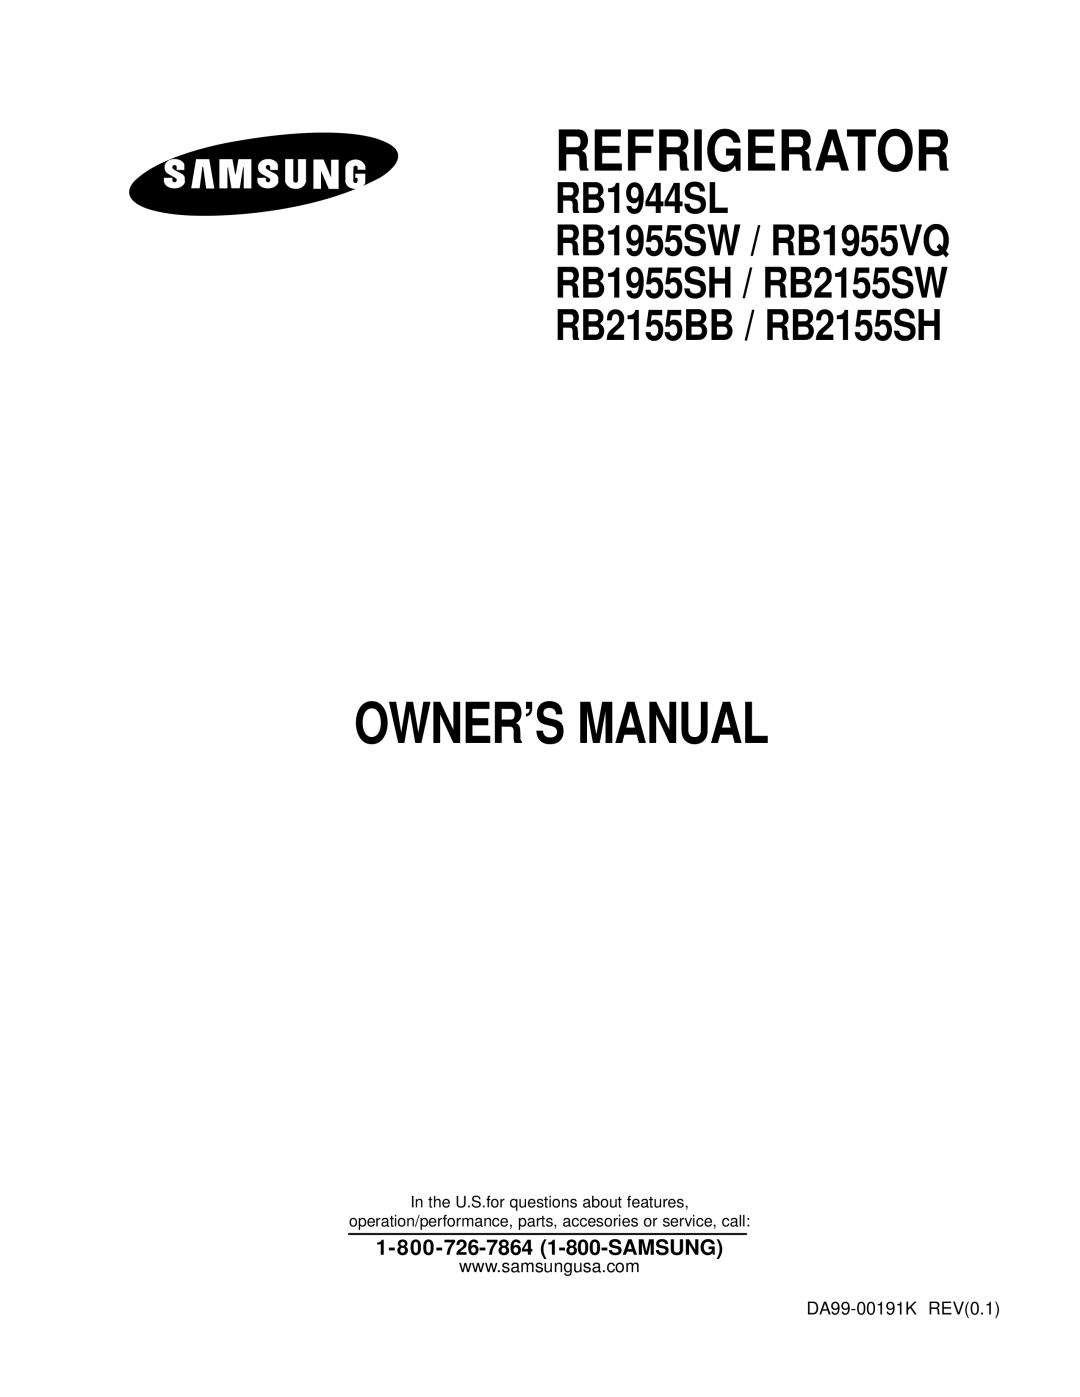 Samsung owner manual Refrigerator, RB1944SL RB1955SW / RB1955VQ RB1955SH / RB2155SW RB2155BB / RB2155SH 